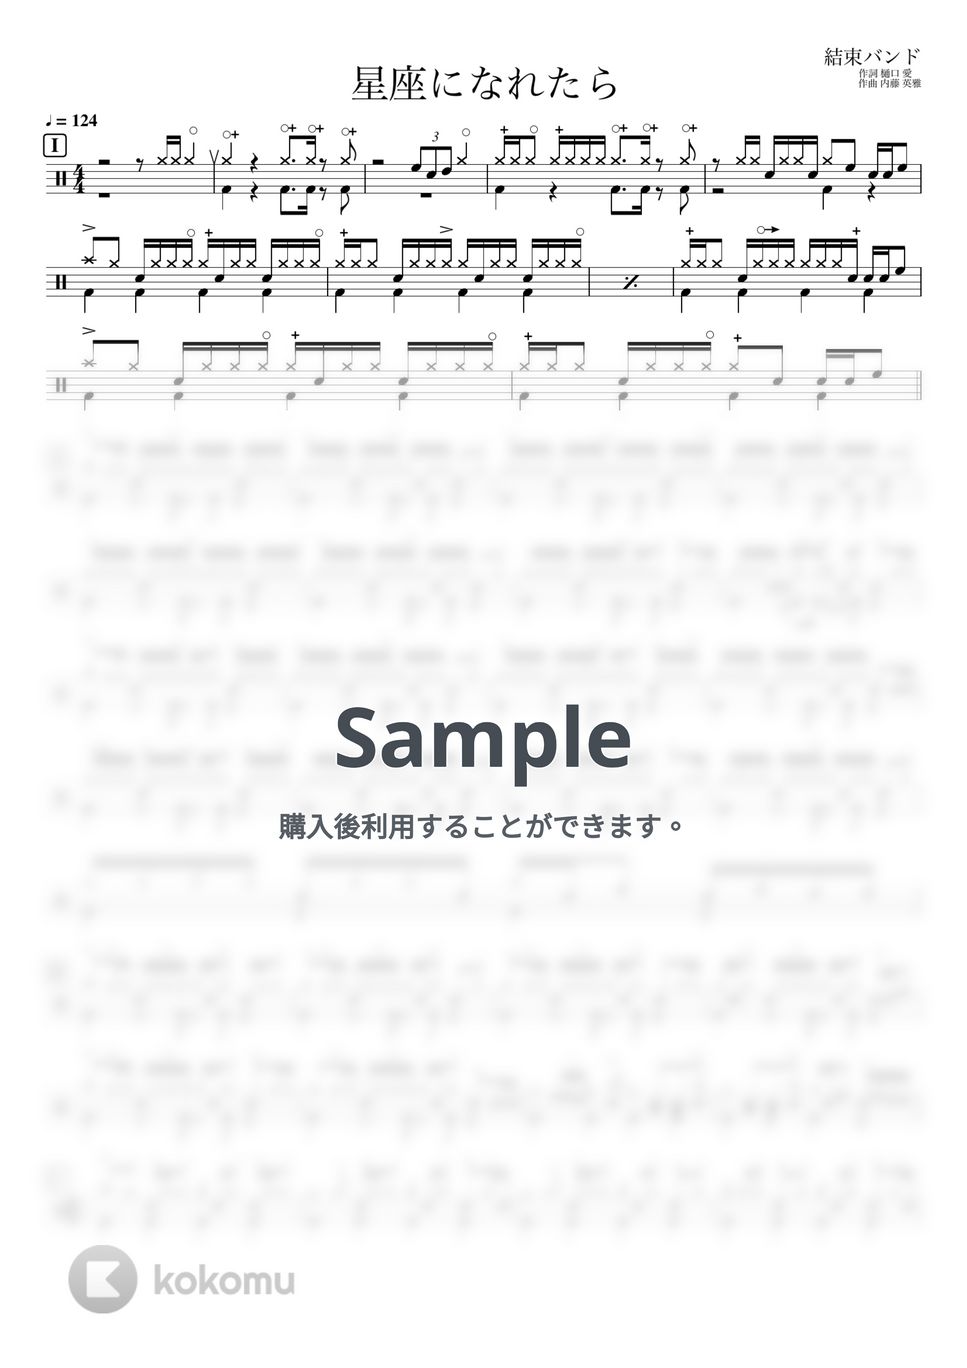 結束バンド - 星座になれたら (ドラム譜のみ) by YUTO